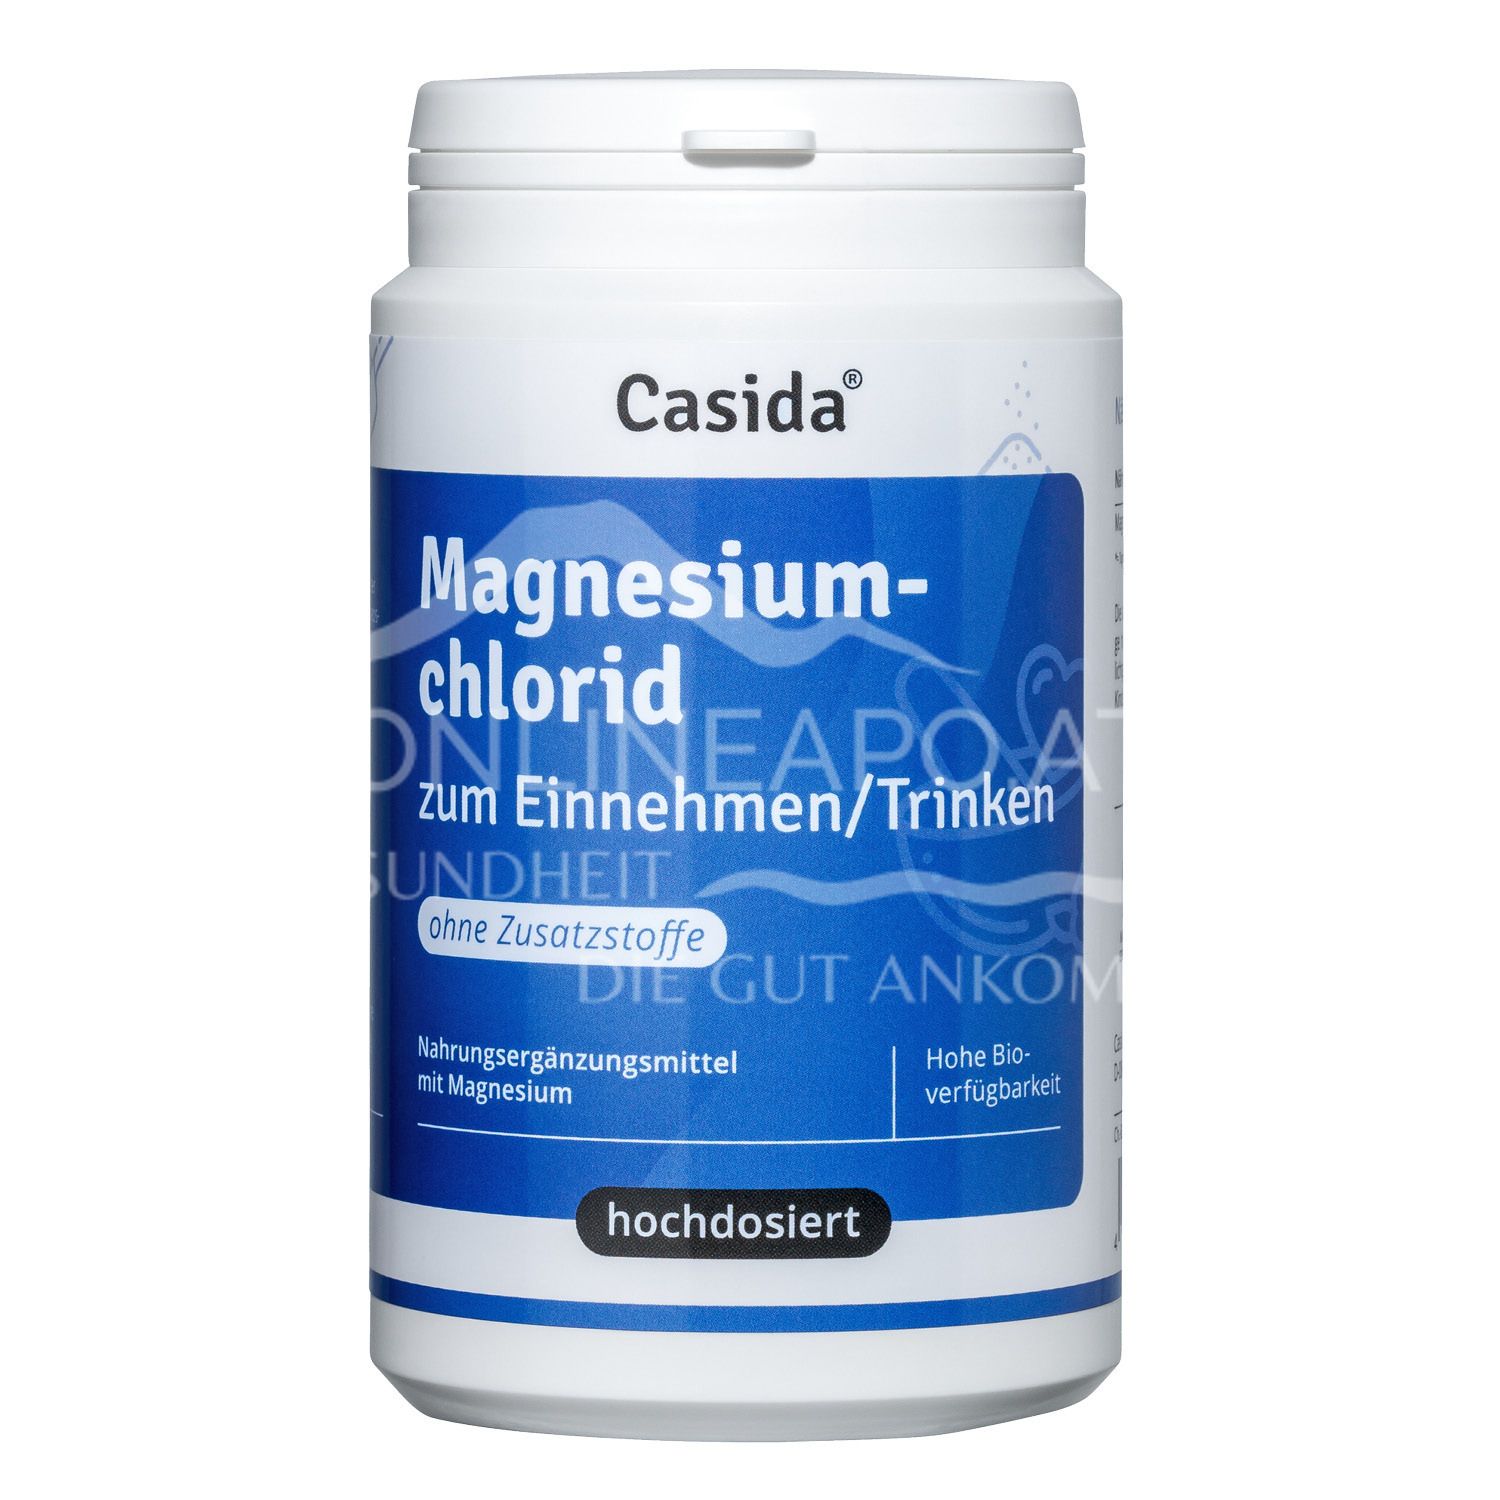 Casida Magnesiumchlorid zum Einnehmen / Trinken